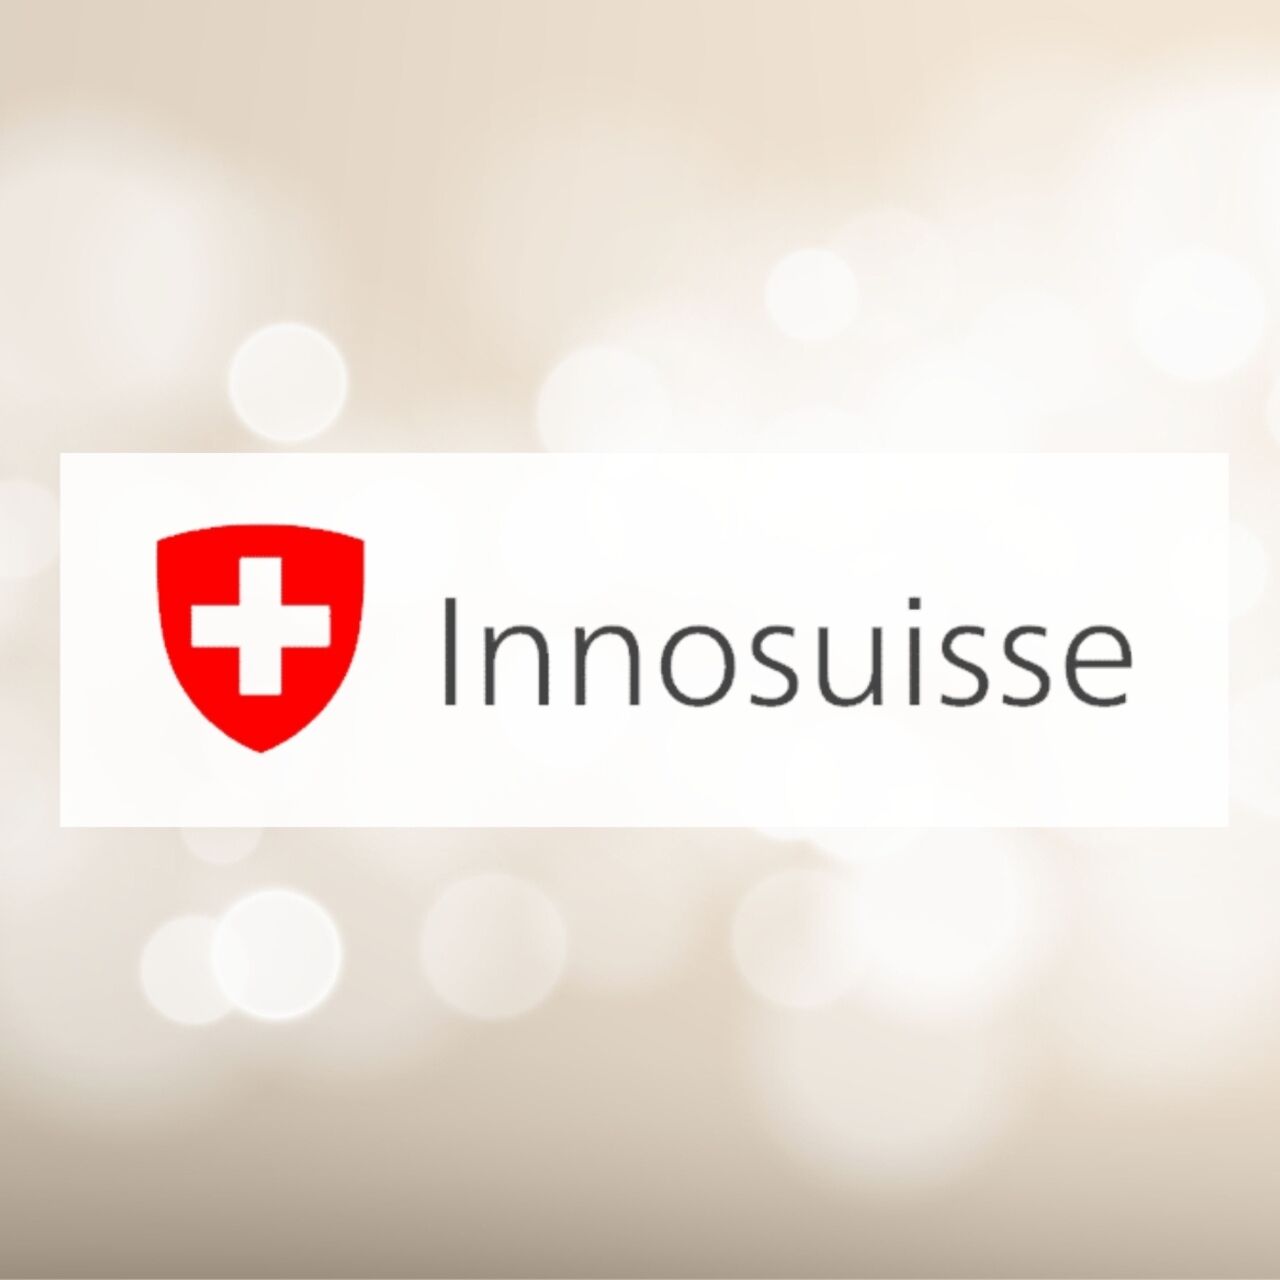 Innosuisse: Šveices inovāciju veicināšanas aģentūra